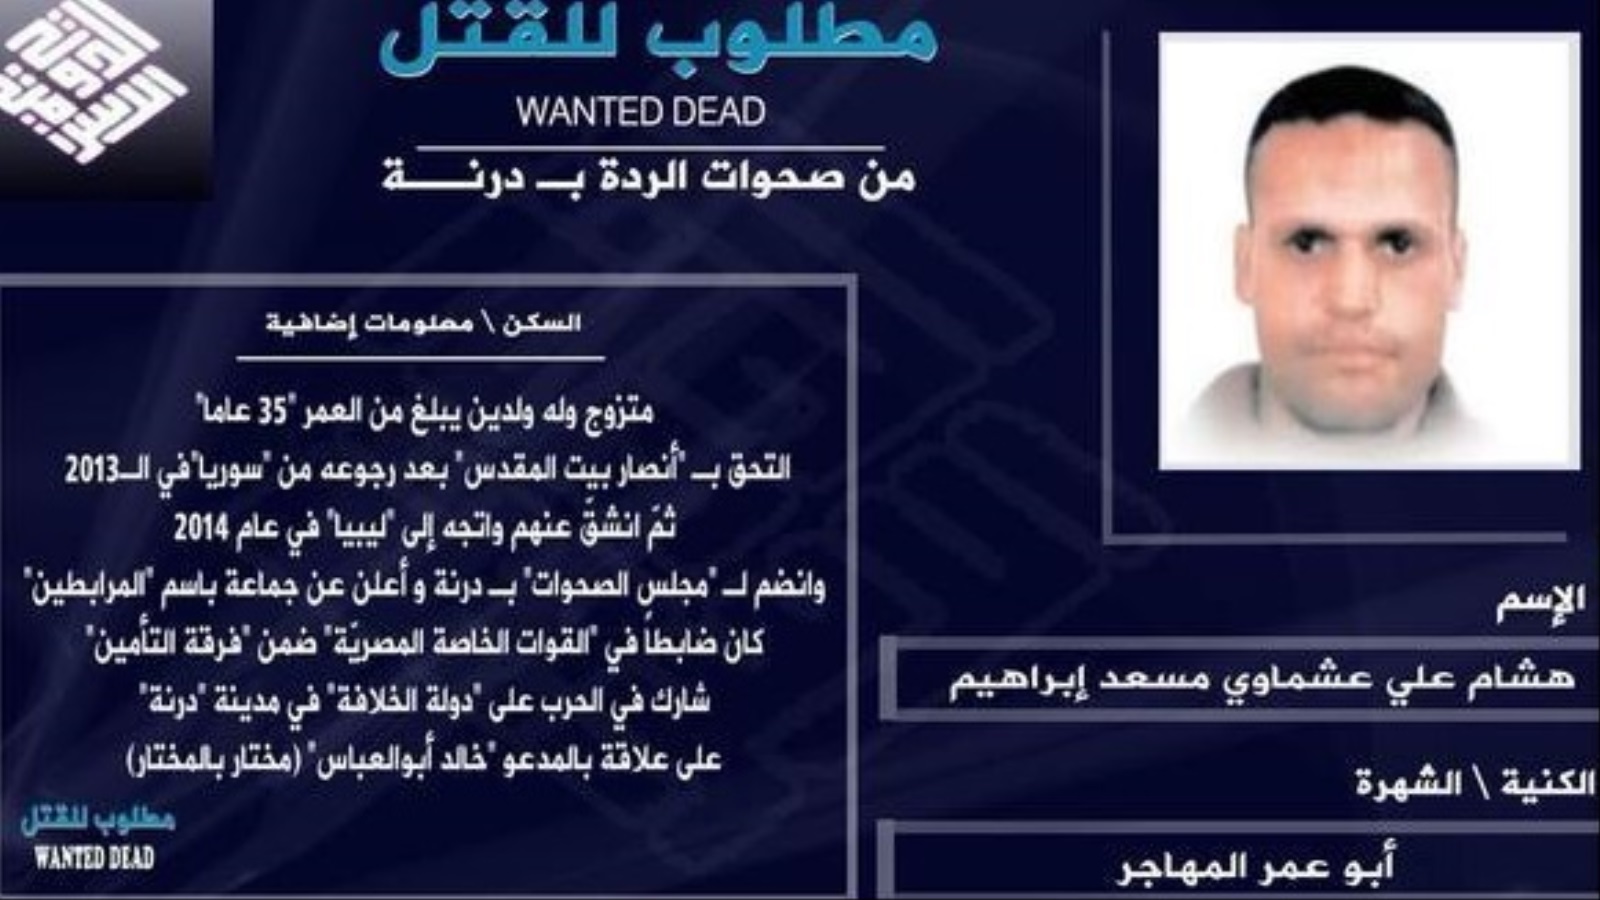 في عام ٢٠١٥ نشر بعض عناصر تنظيم الدولة الإسلامية بليبيا صورة عشماوي تحت عنوان (مطلوب للقتل) متهمين إياه بقتالهم في مدينة درنة ضمن ما وصفوها بصحوات الردة